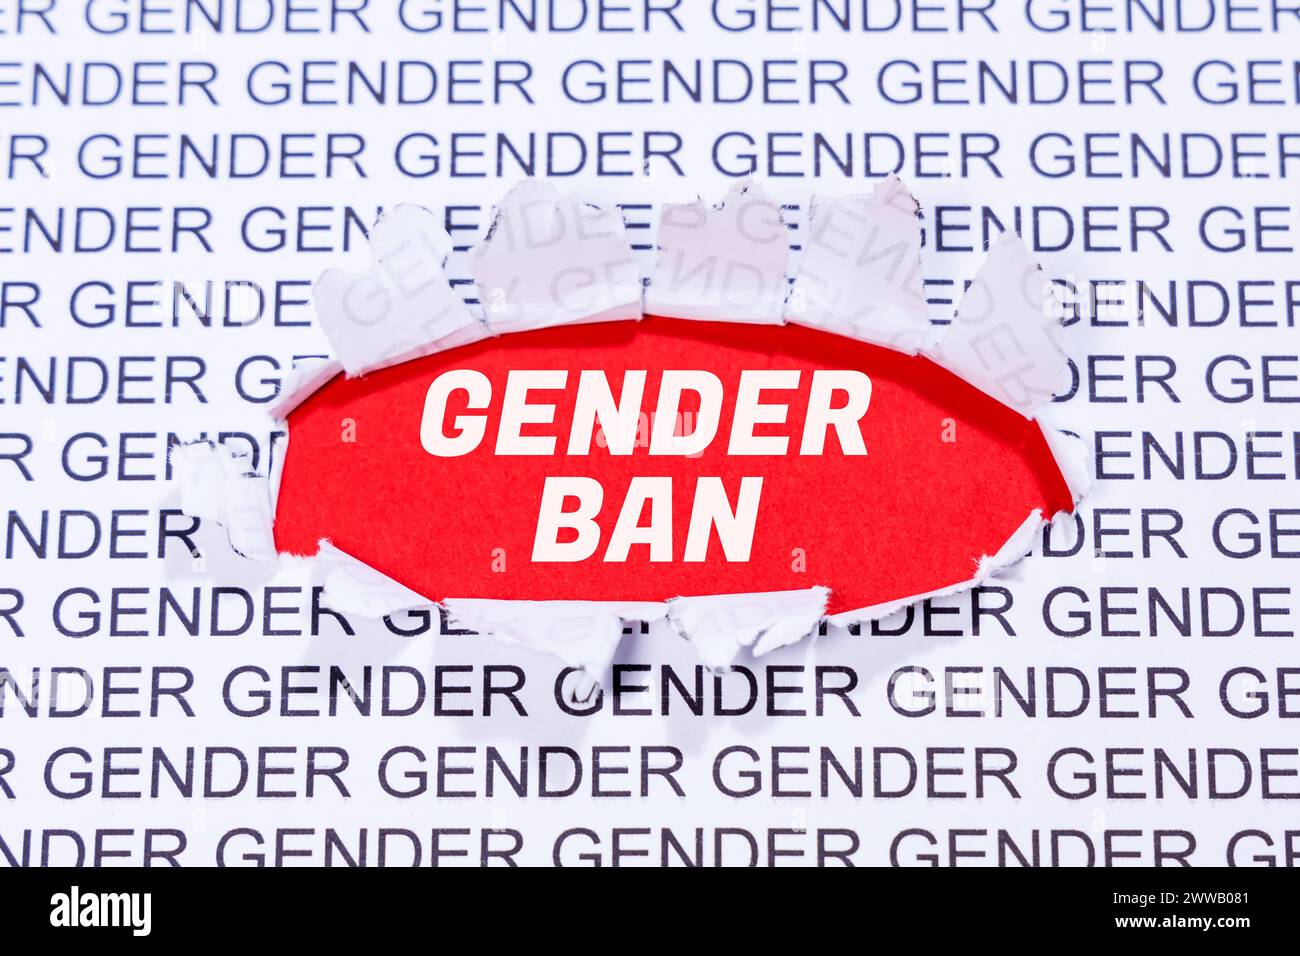 Interdiction de genre contre le discours de concept de communication linguistique adapté au genre Banque D'Images